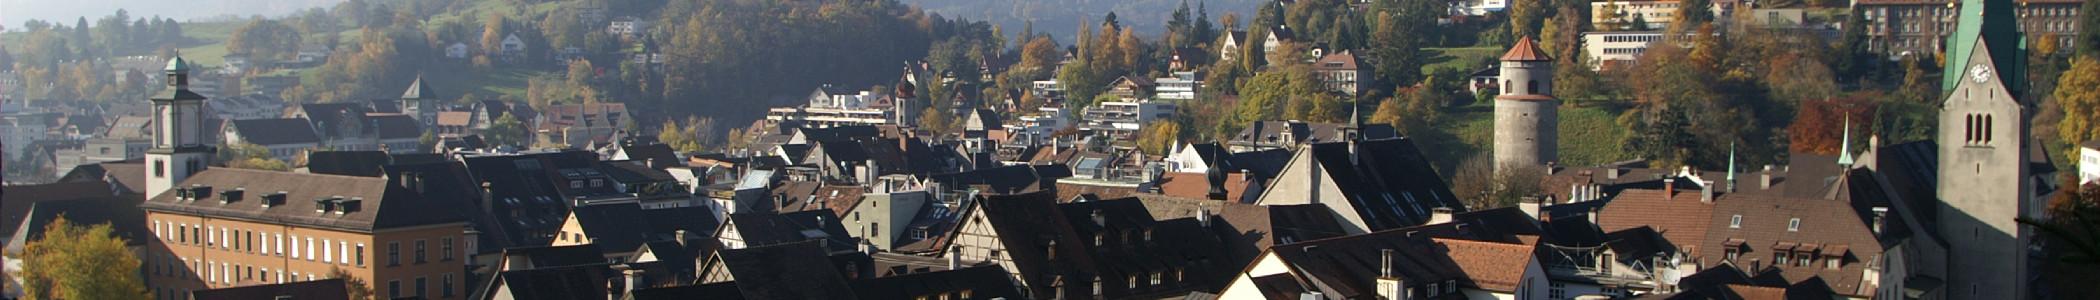 Banner image for Feldkirch on GigsGuide